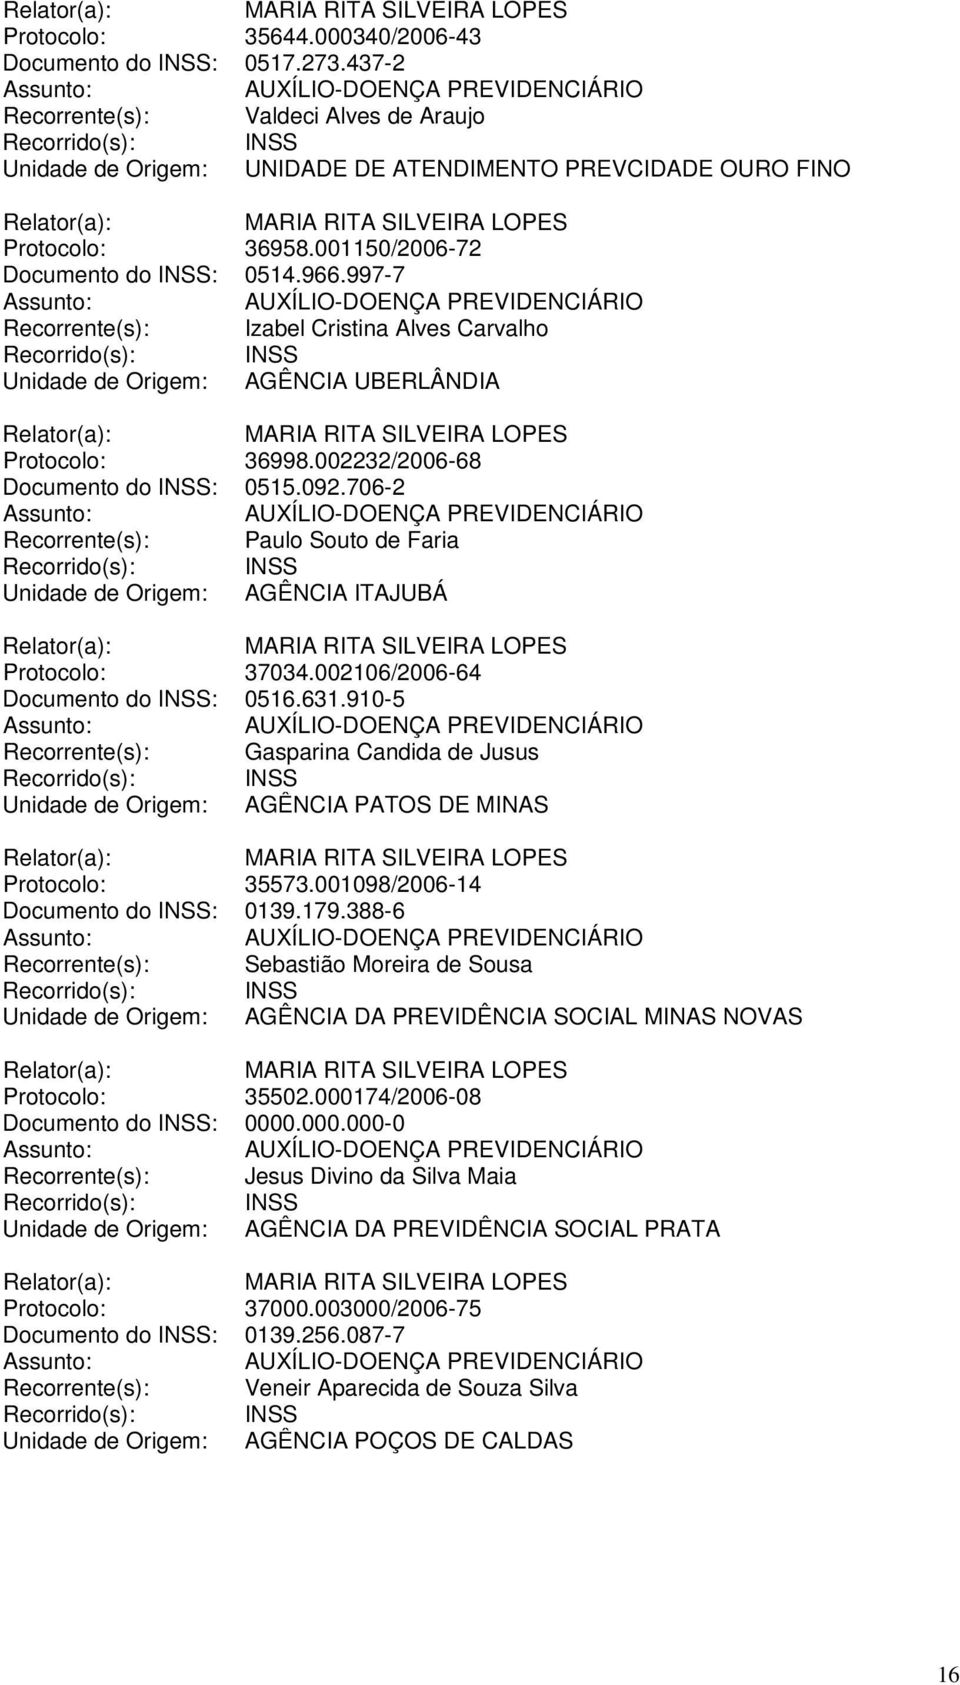 706-2 Recorrente(s): Paulo Souto de Faria Unidade de Origem: AGÊNCIA ITAJUBÁ Protocolo: 37034.002106/2006-64 Documento do INSS: 0516.631.